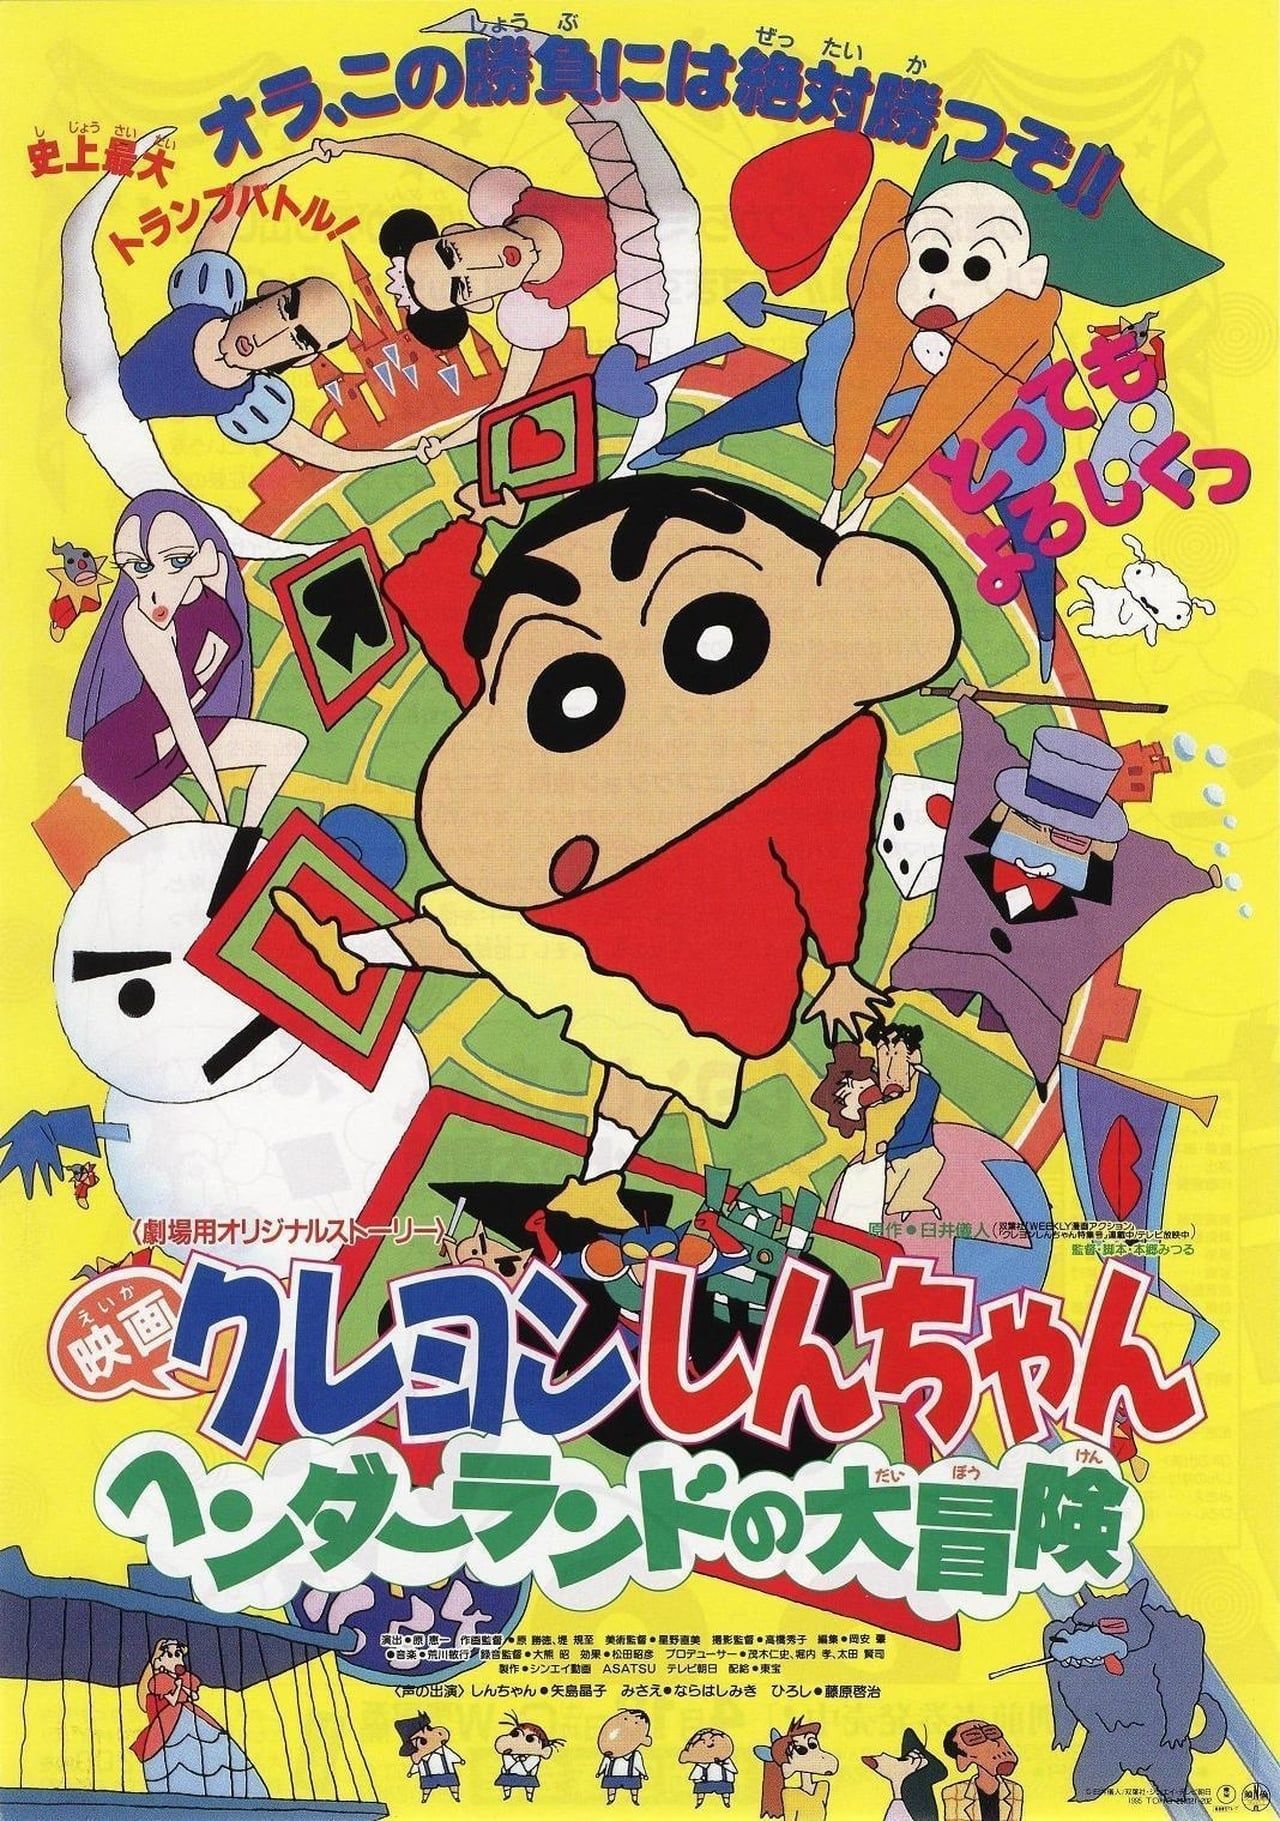 [Best Version] Crayon Shin-chan Movie 04: Henderland no Daibouken (Movie) (Sub)